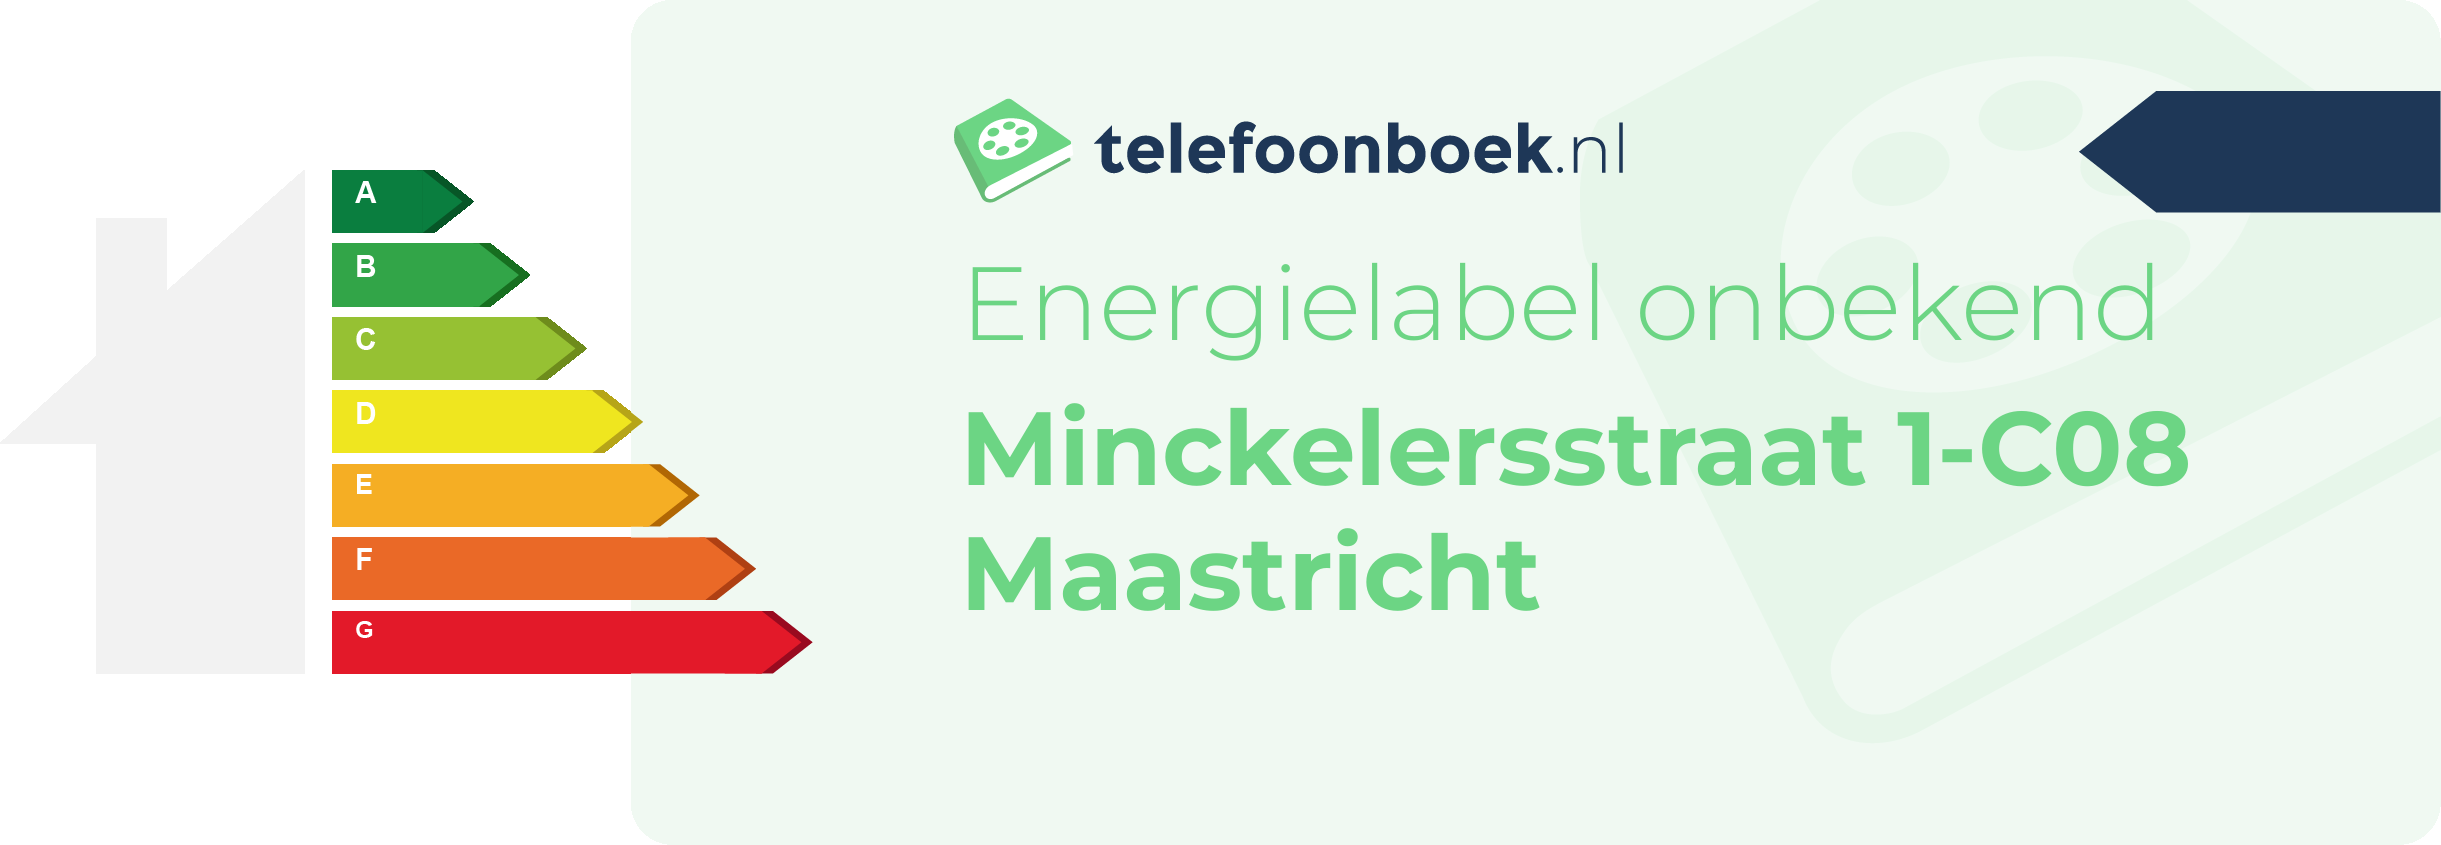 Energielabel Minckelersstraat 1-C08 Maastricht